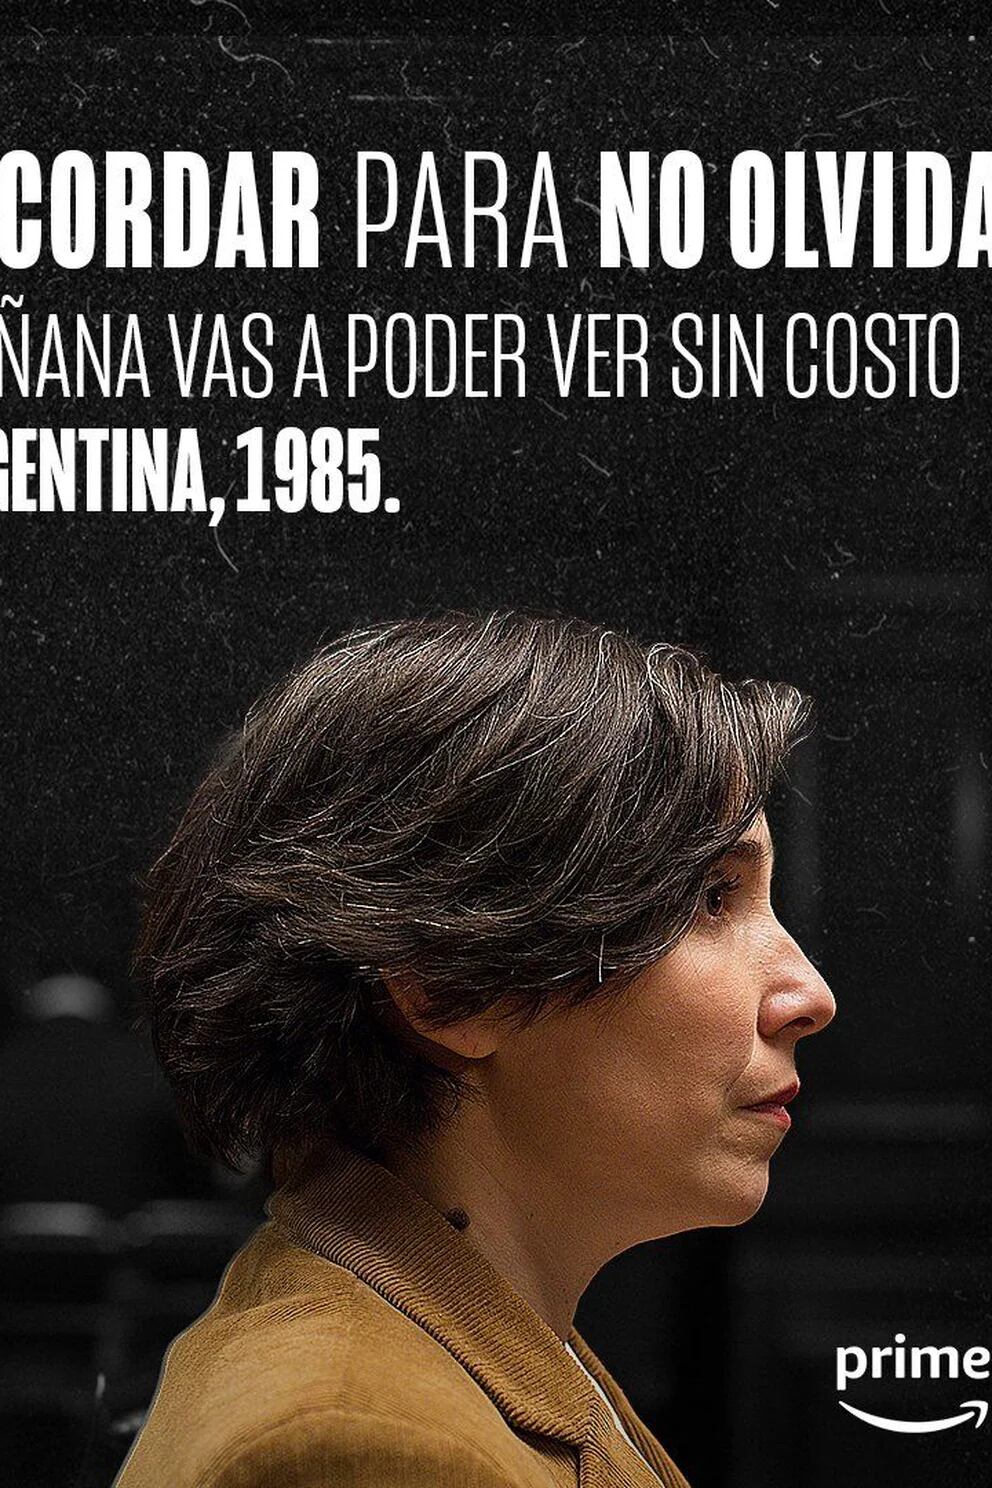 Fiscal de Argentina, 1985: el filme está ganando la batalla por la  memoria